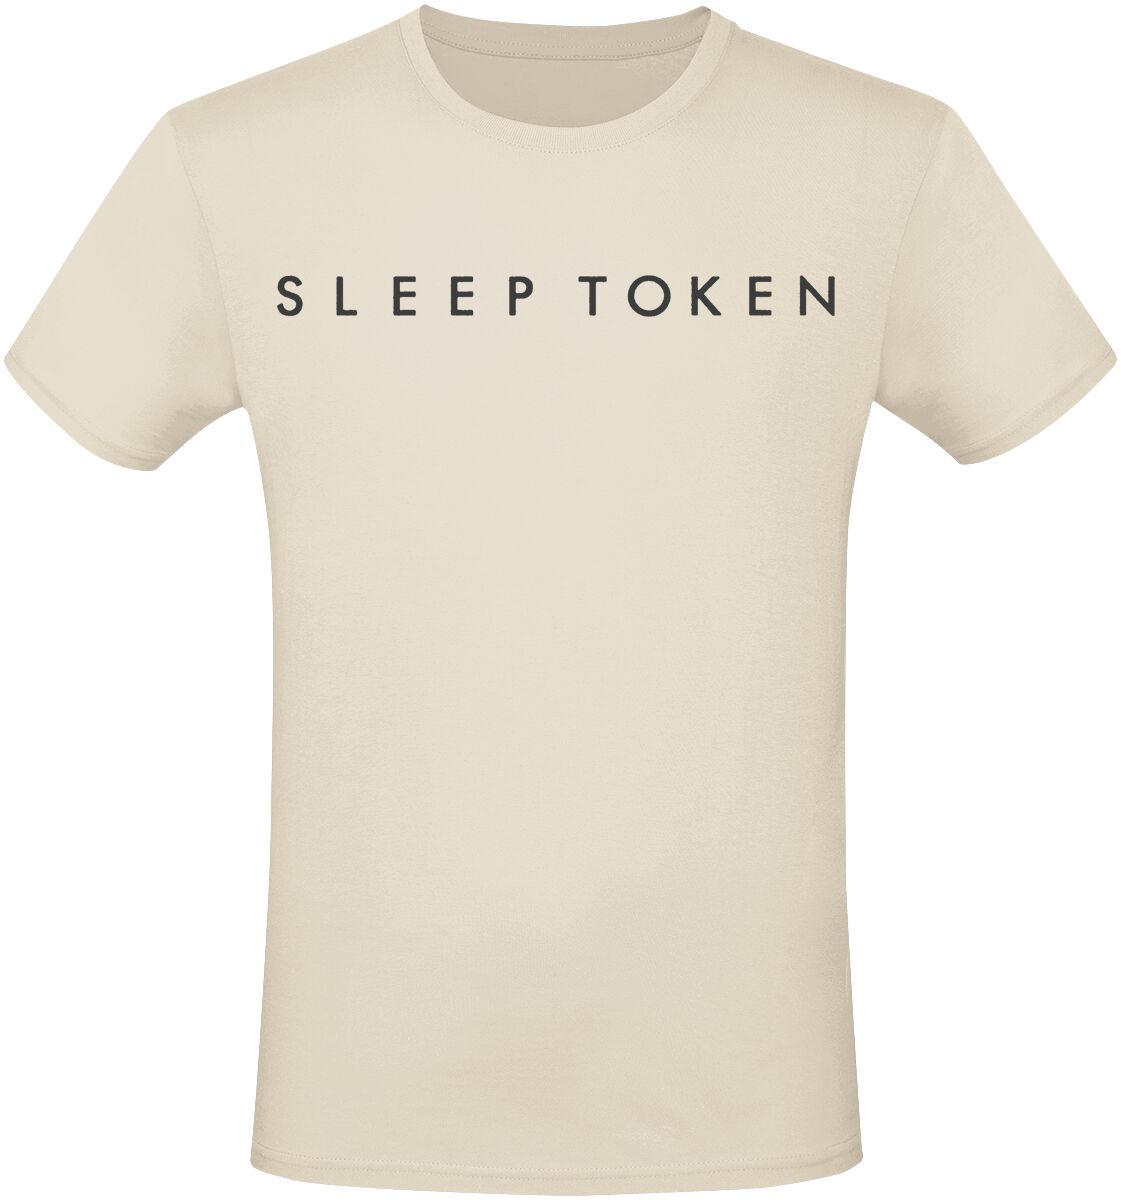 Sleep Token T-Shirt - Take Me Back To Eden - S bis 3XL - für Männer - Größe XXL - beige  - EMP exklusives Merchandise!